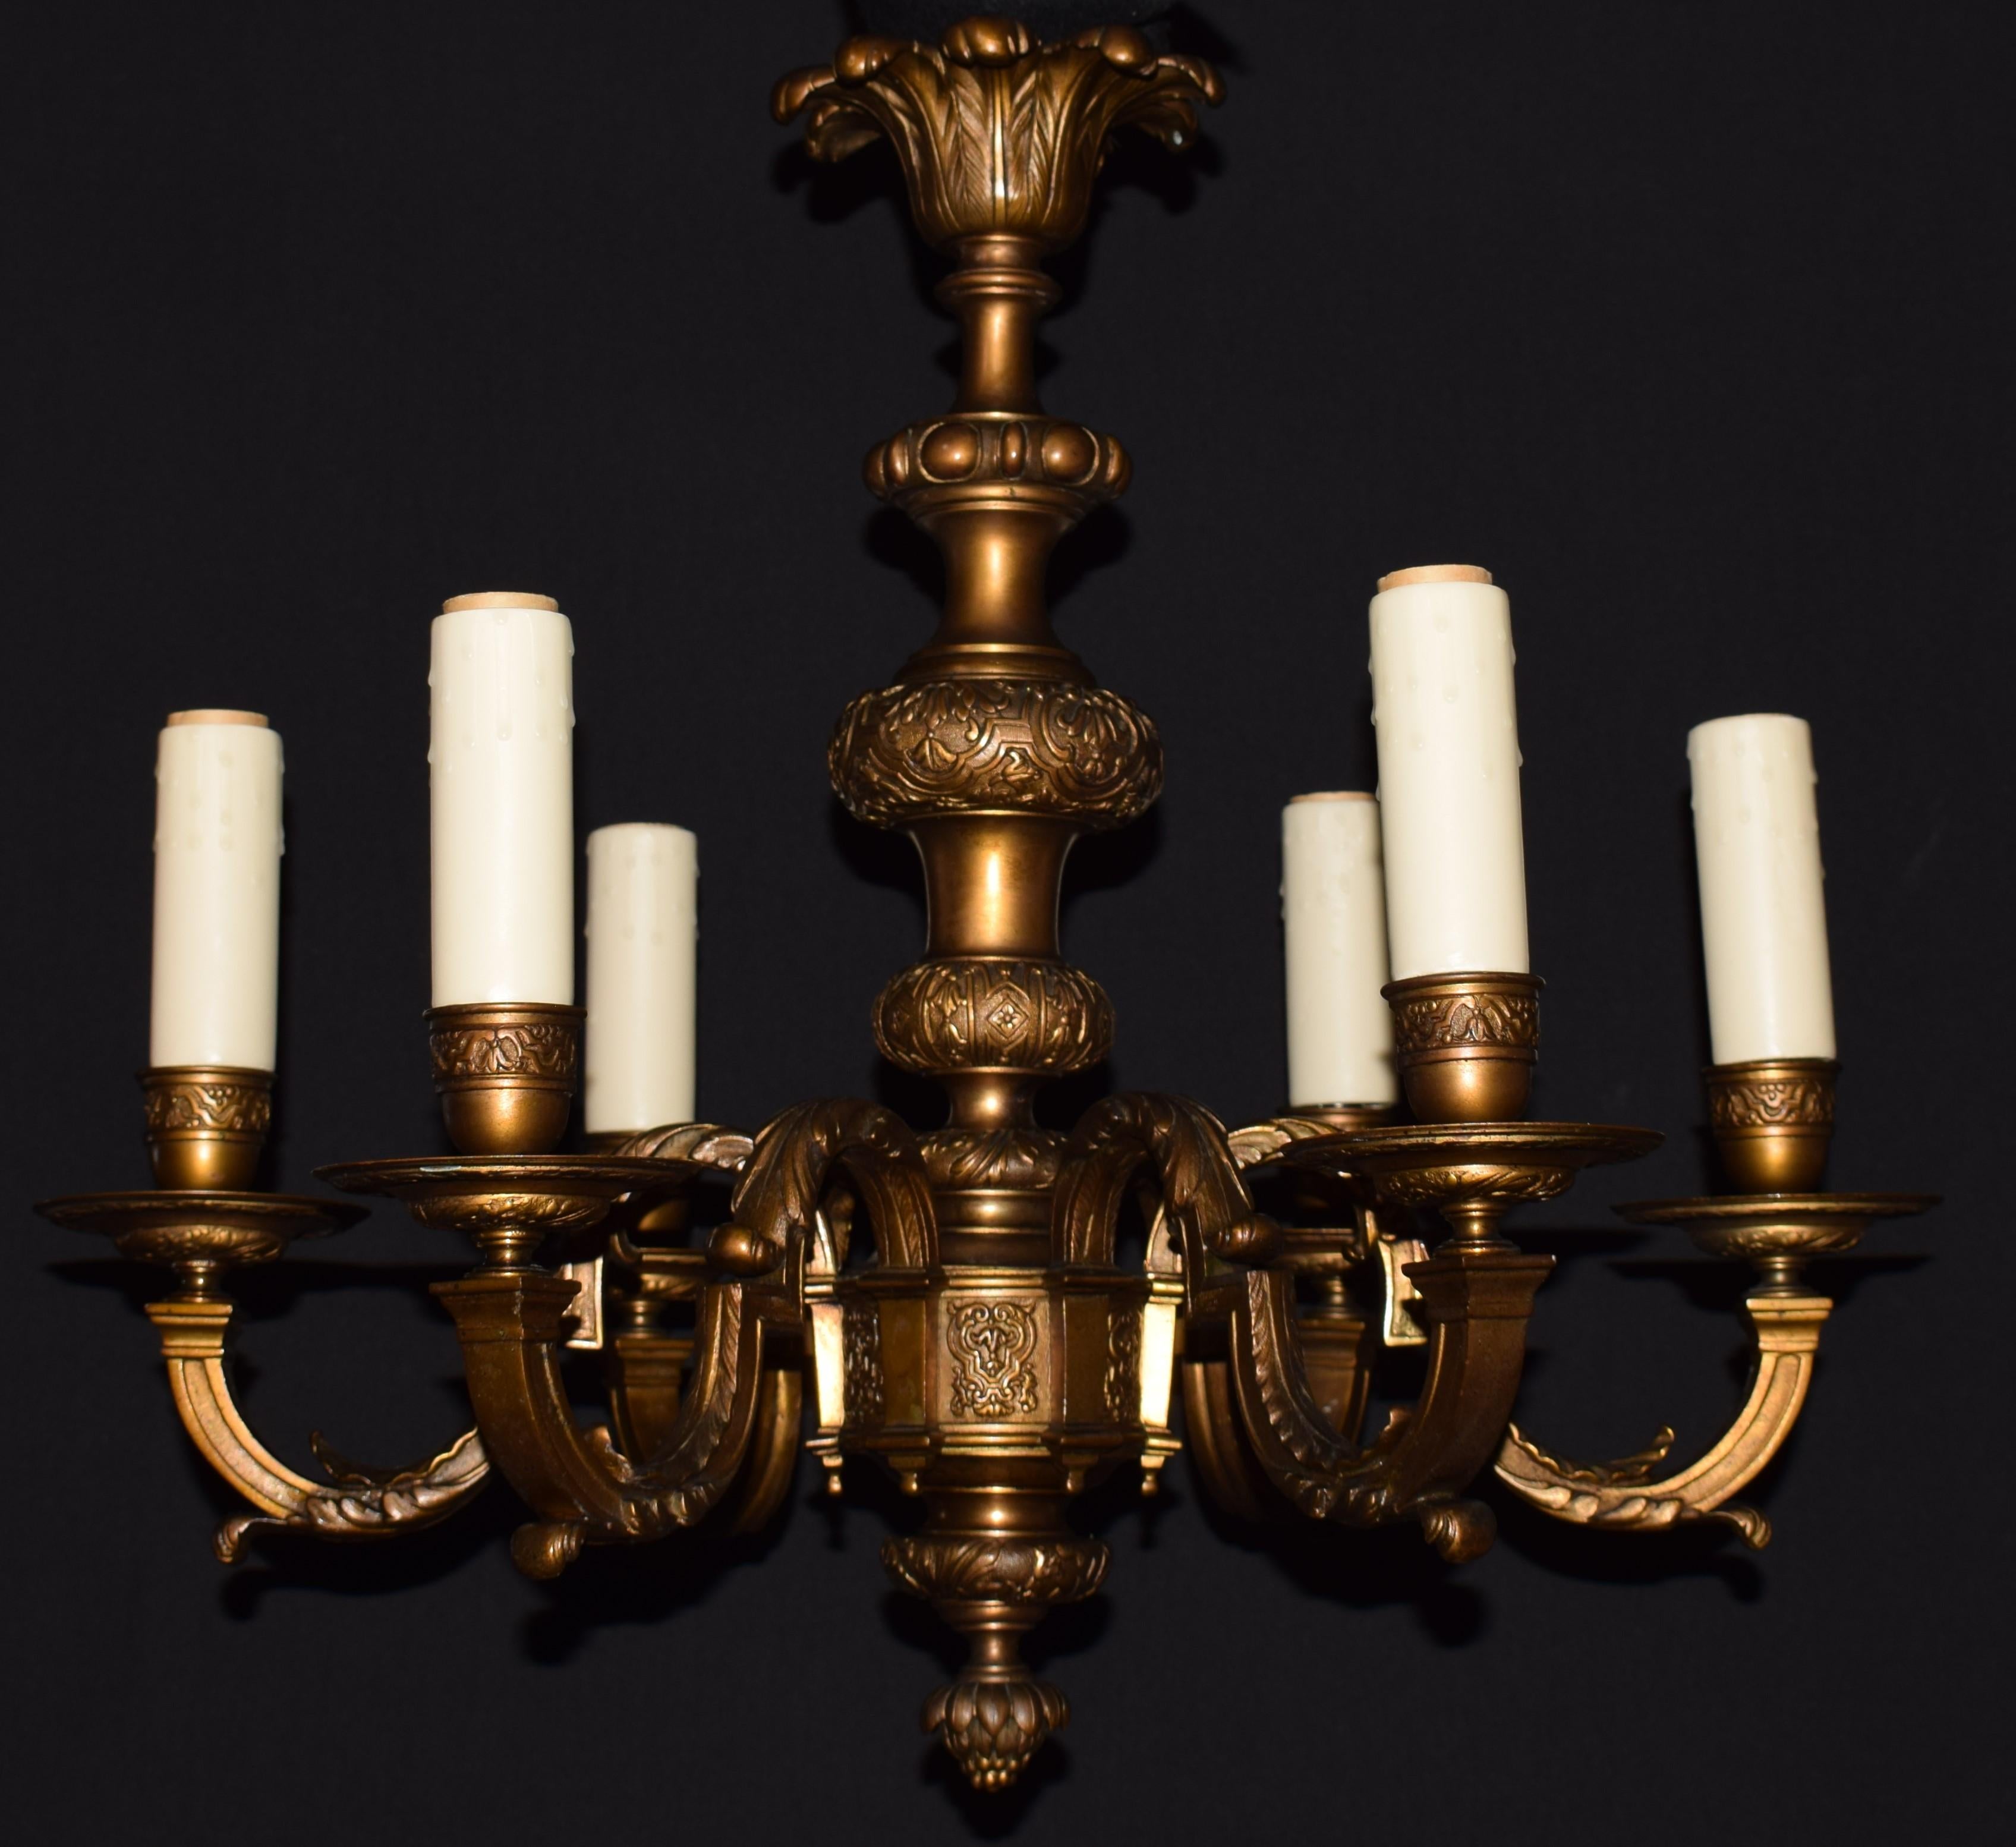 Un beau lustre à 6 lumières en bronze doré. Grande qualité. Patine d'origine. 
France, vers 1920. 
Dimensions : Hauteur 21